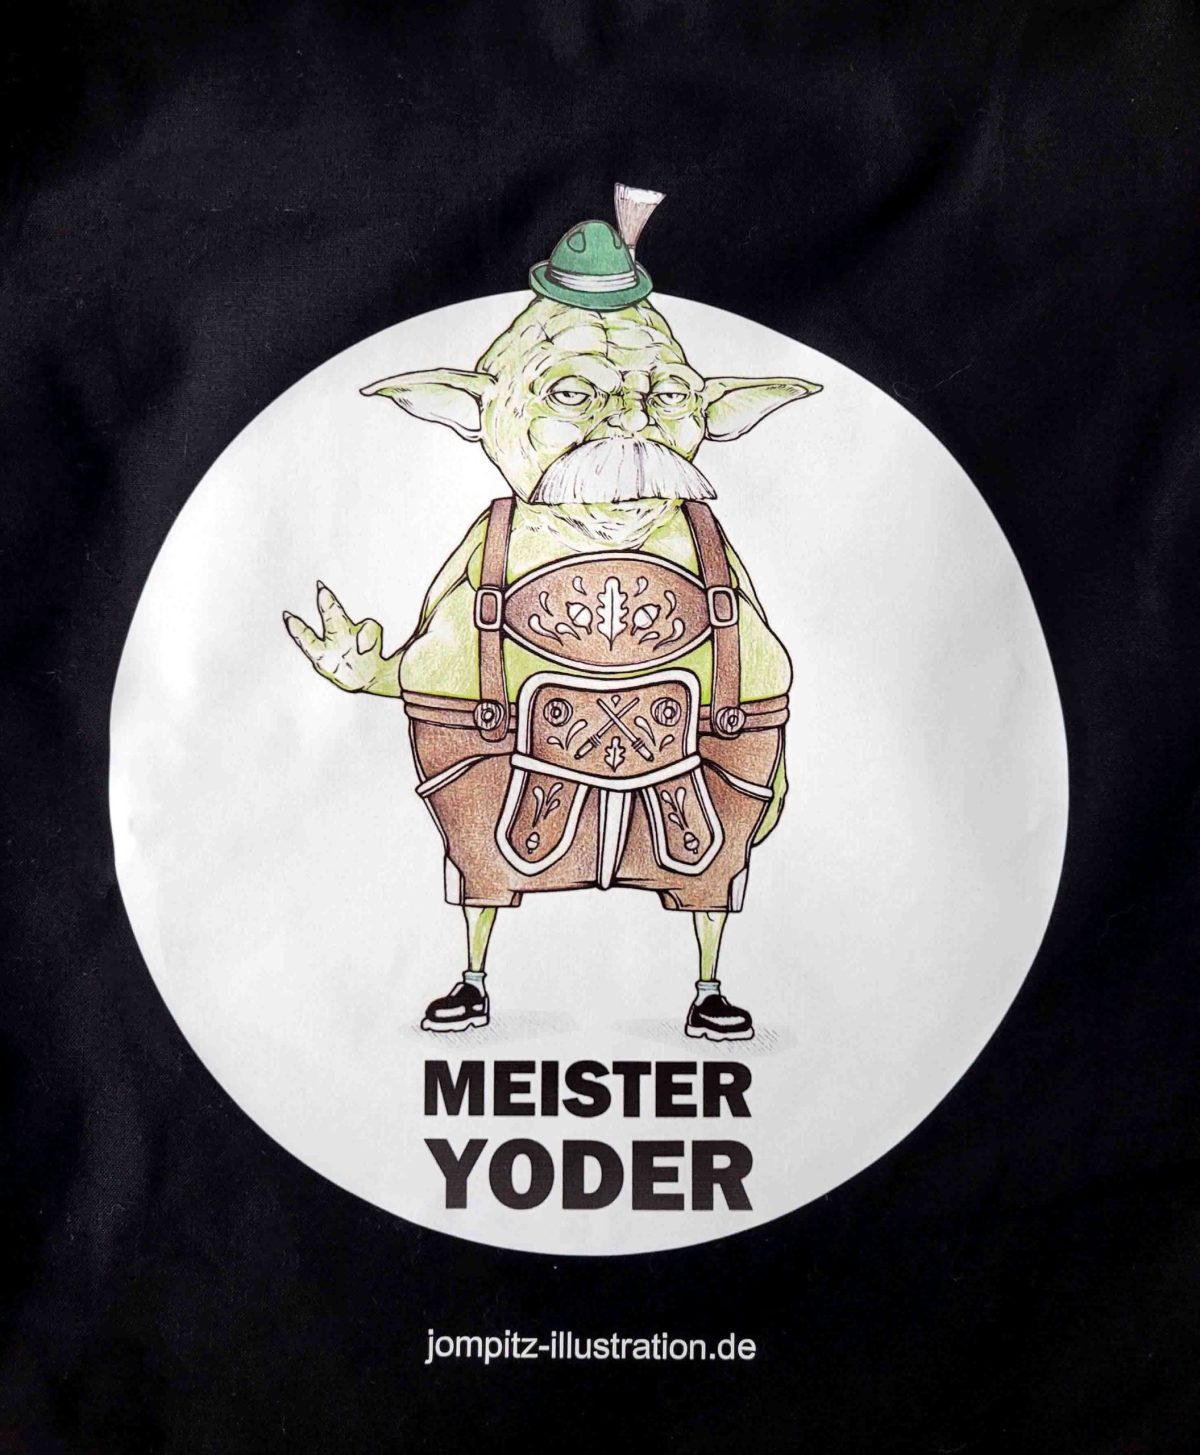 Turnbeutel "Meister Yoder"